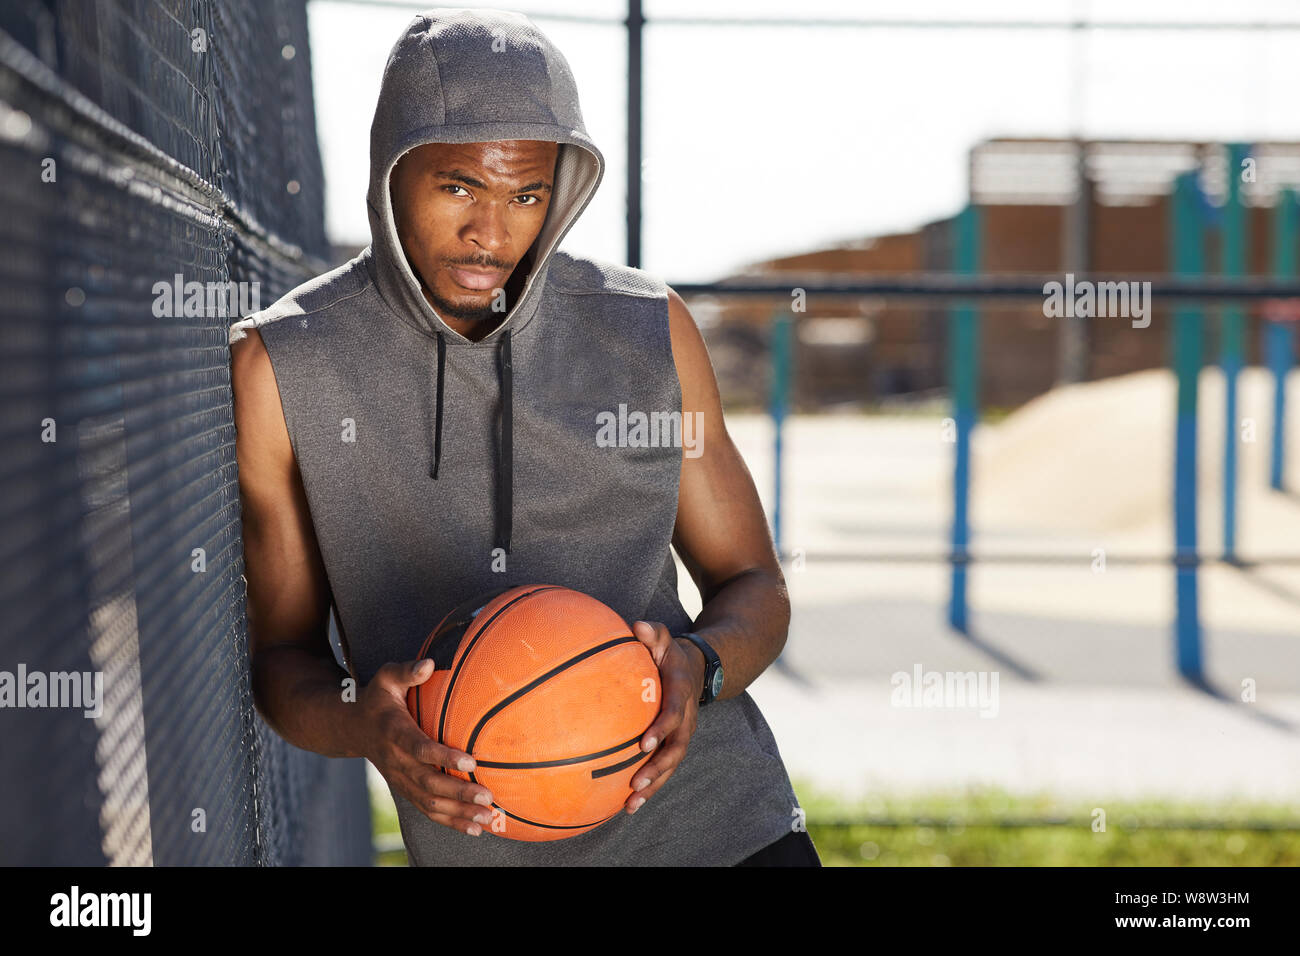 Vita ritratto di contemporaneo afro-uomo holding basket ball guardando la fotocamera mentre in posa nella corte di sport all'aperto, spazio di copia Foto Stock